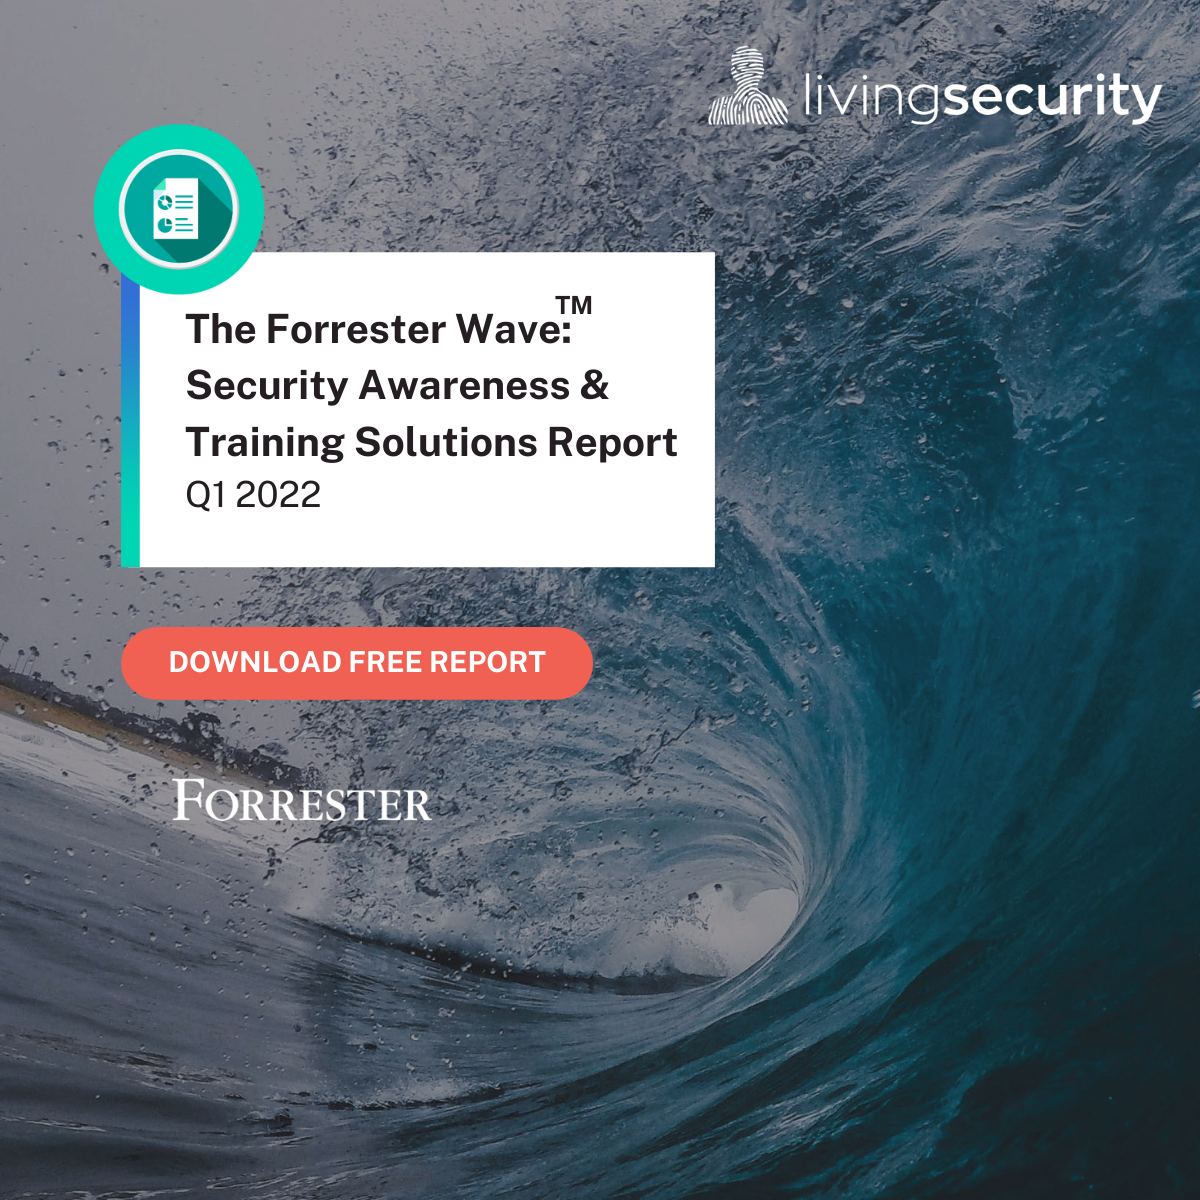 Forrester Wave 2022 - Download Report - Living Security - wave variant